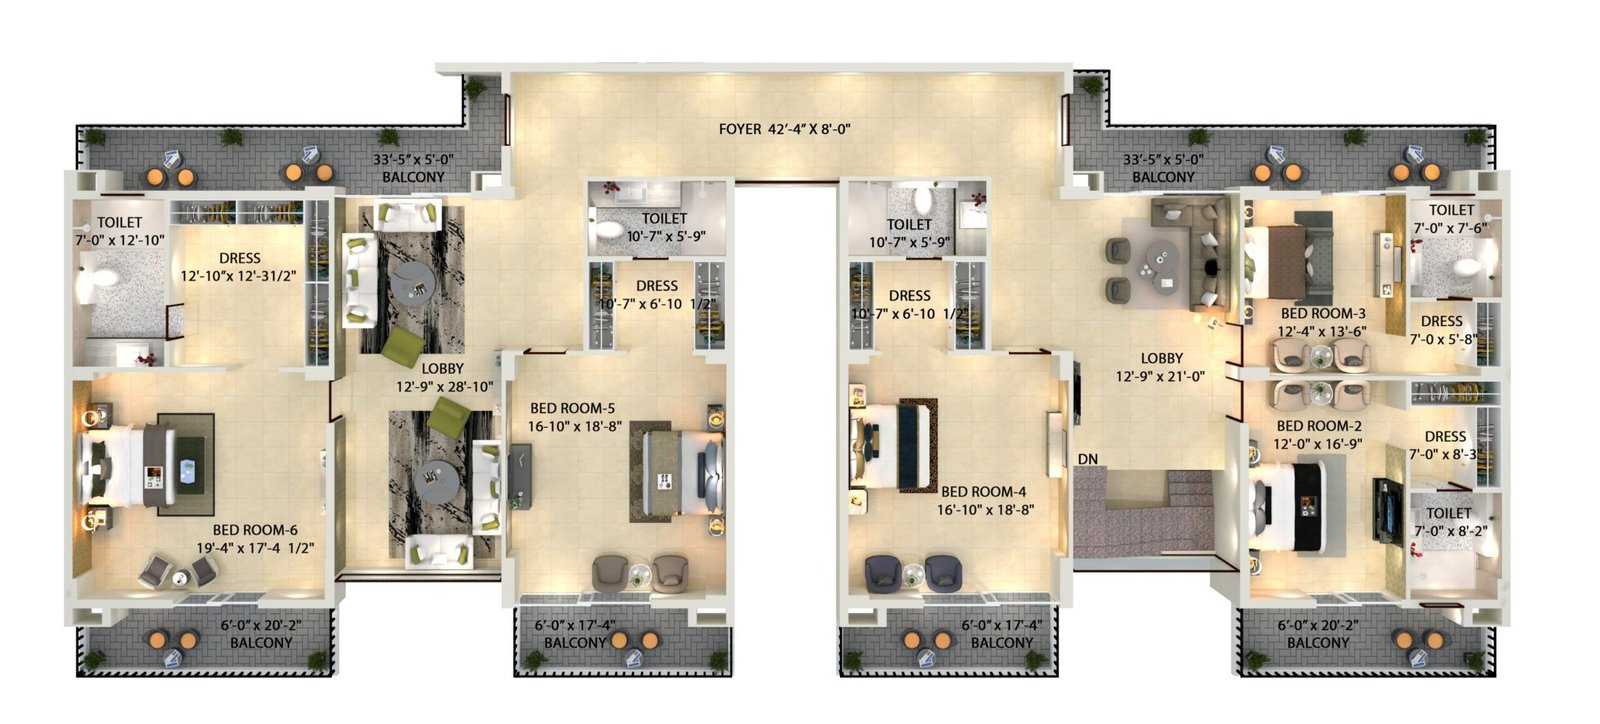 6 bhk duplex upper unit plan